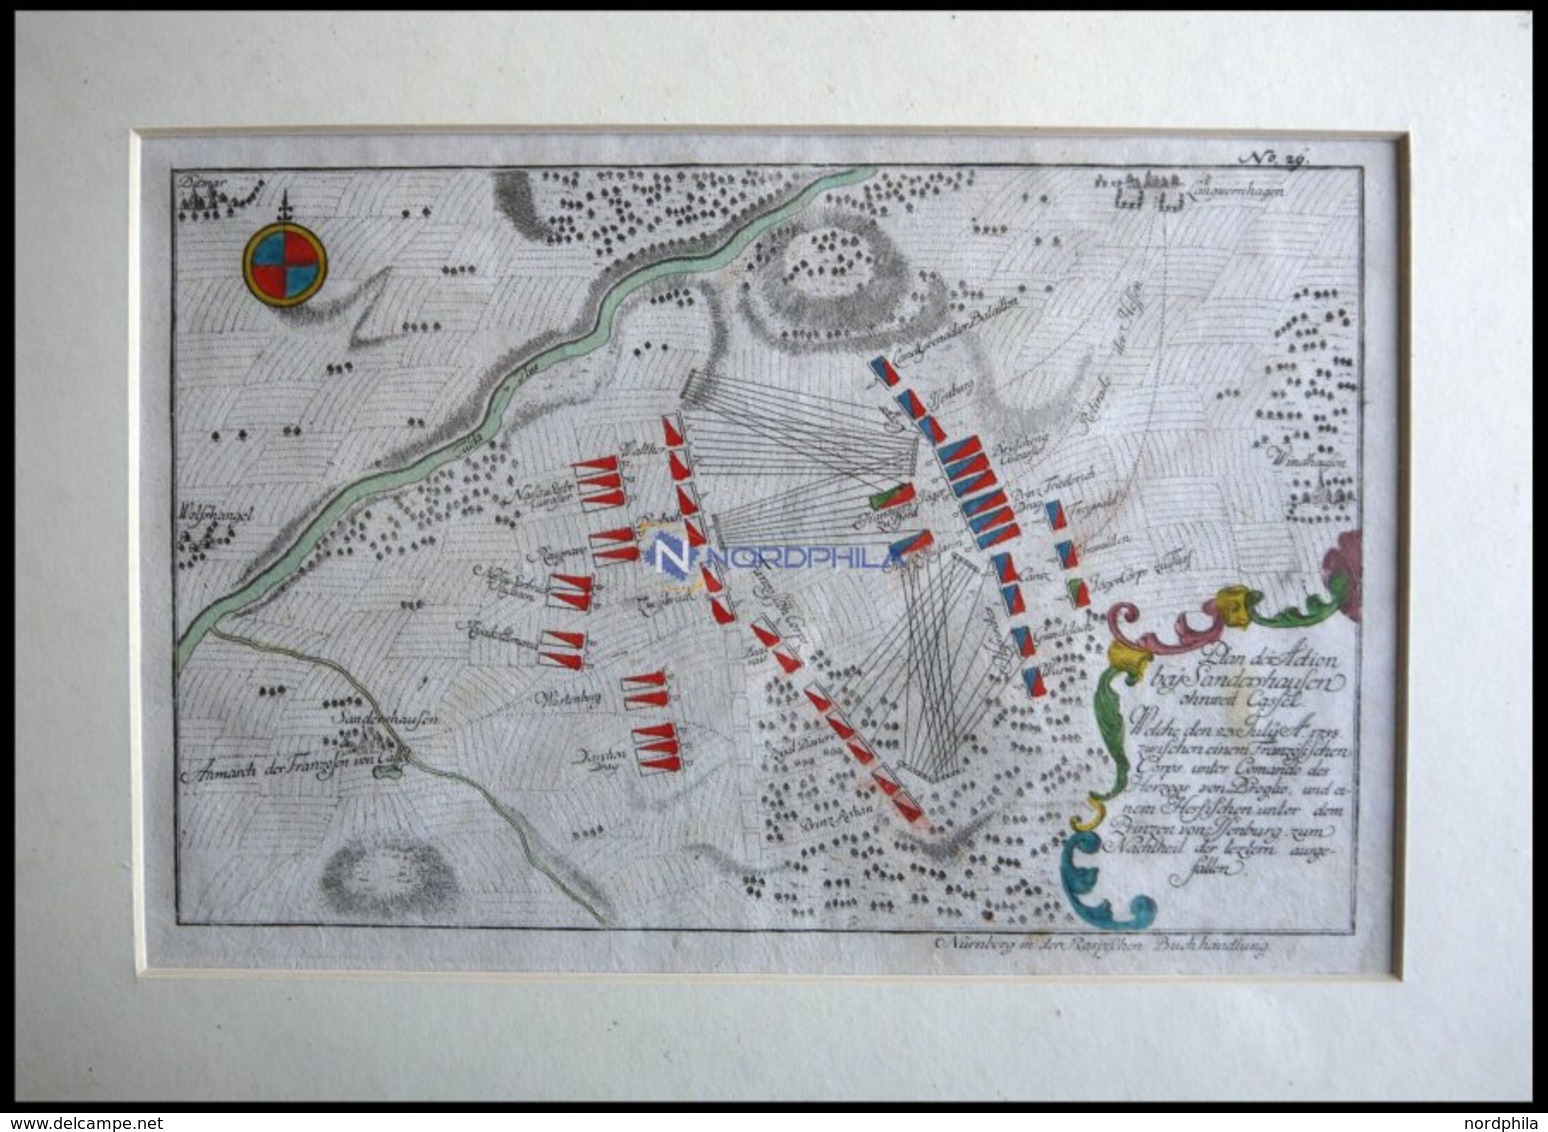 SANDERSHAUSEN, Plan Der Schlacht Vom 23.7.1758, Altkolorierter Kupferstich Von Ben Jochai Bei Raspische Buchhandlung 176 - Lithographies